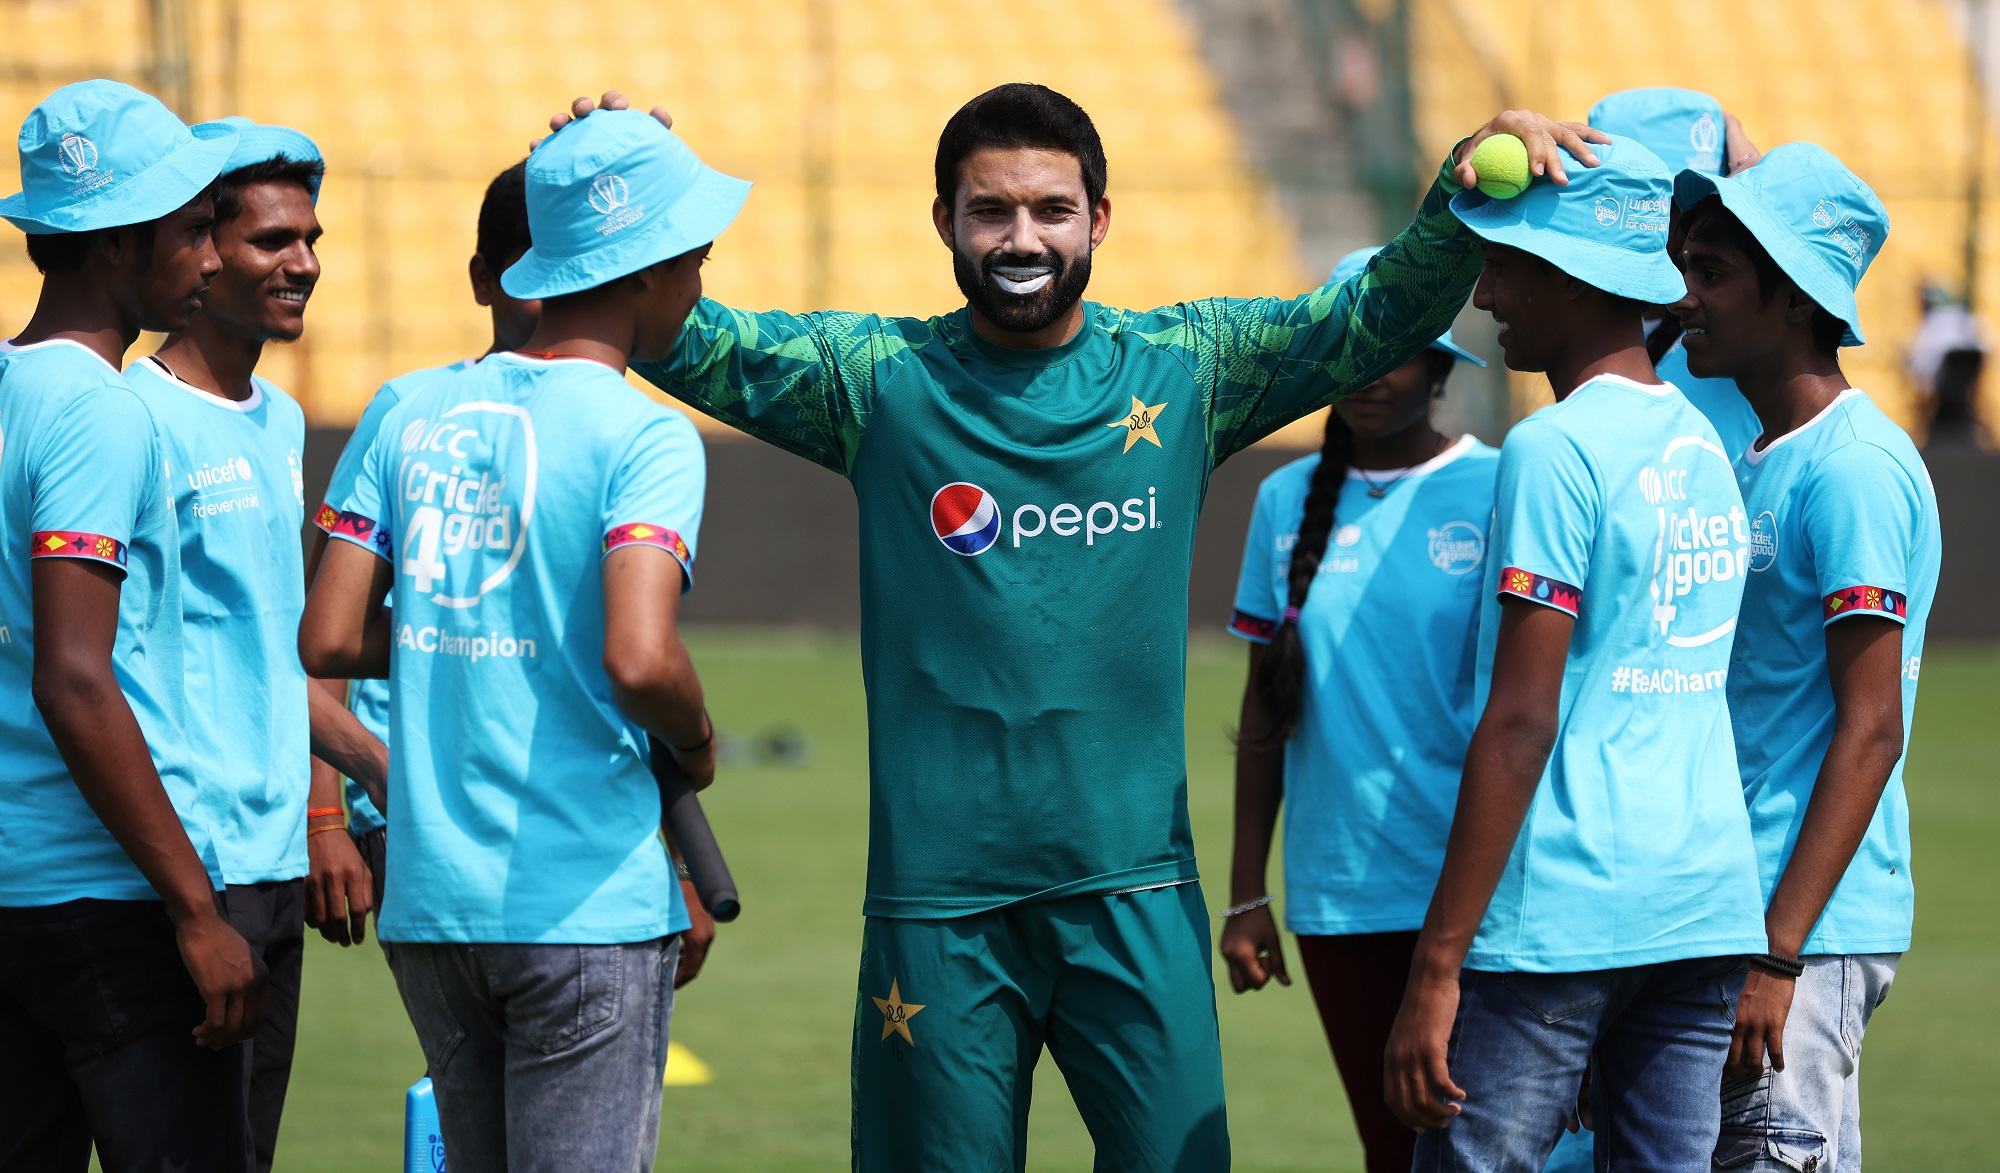  اٹھارہ اکتوبر کو وکٹ کیپر اور بلے باز محمد رضوان کے زیرقیادت پاکستان کی کرکٹ ٹیم نے بنگلورو کے چناسوامی کرکٹ سٹیڈیم میں 50 بچوں کے ساتھ کرکٹ کھیلی۔ 